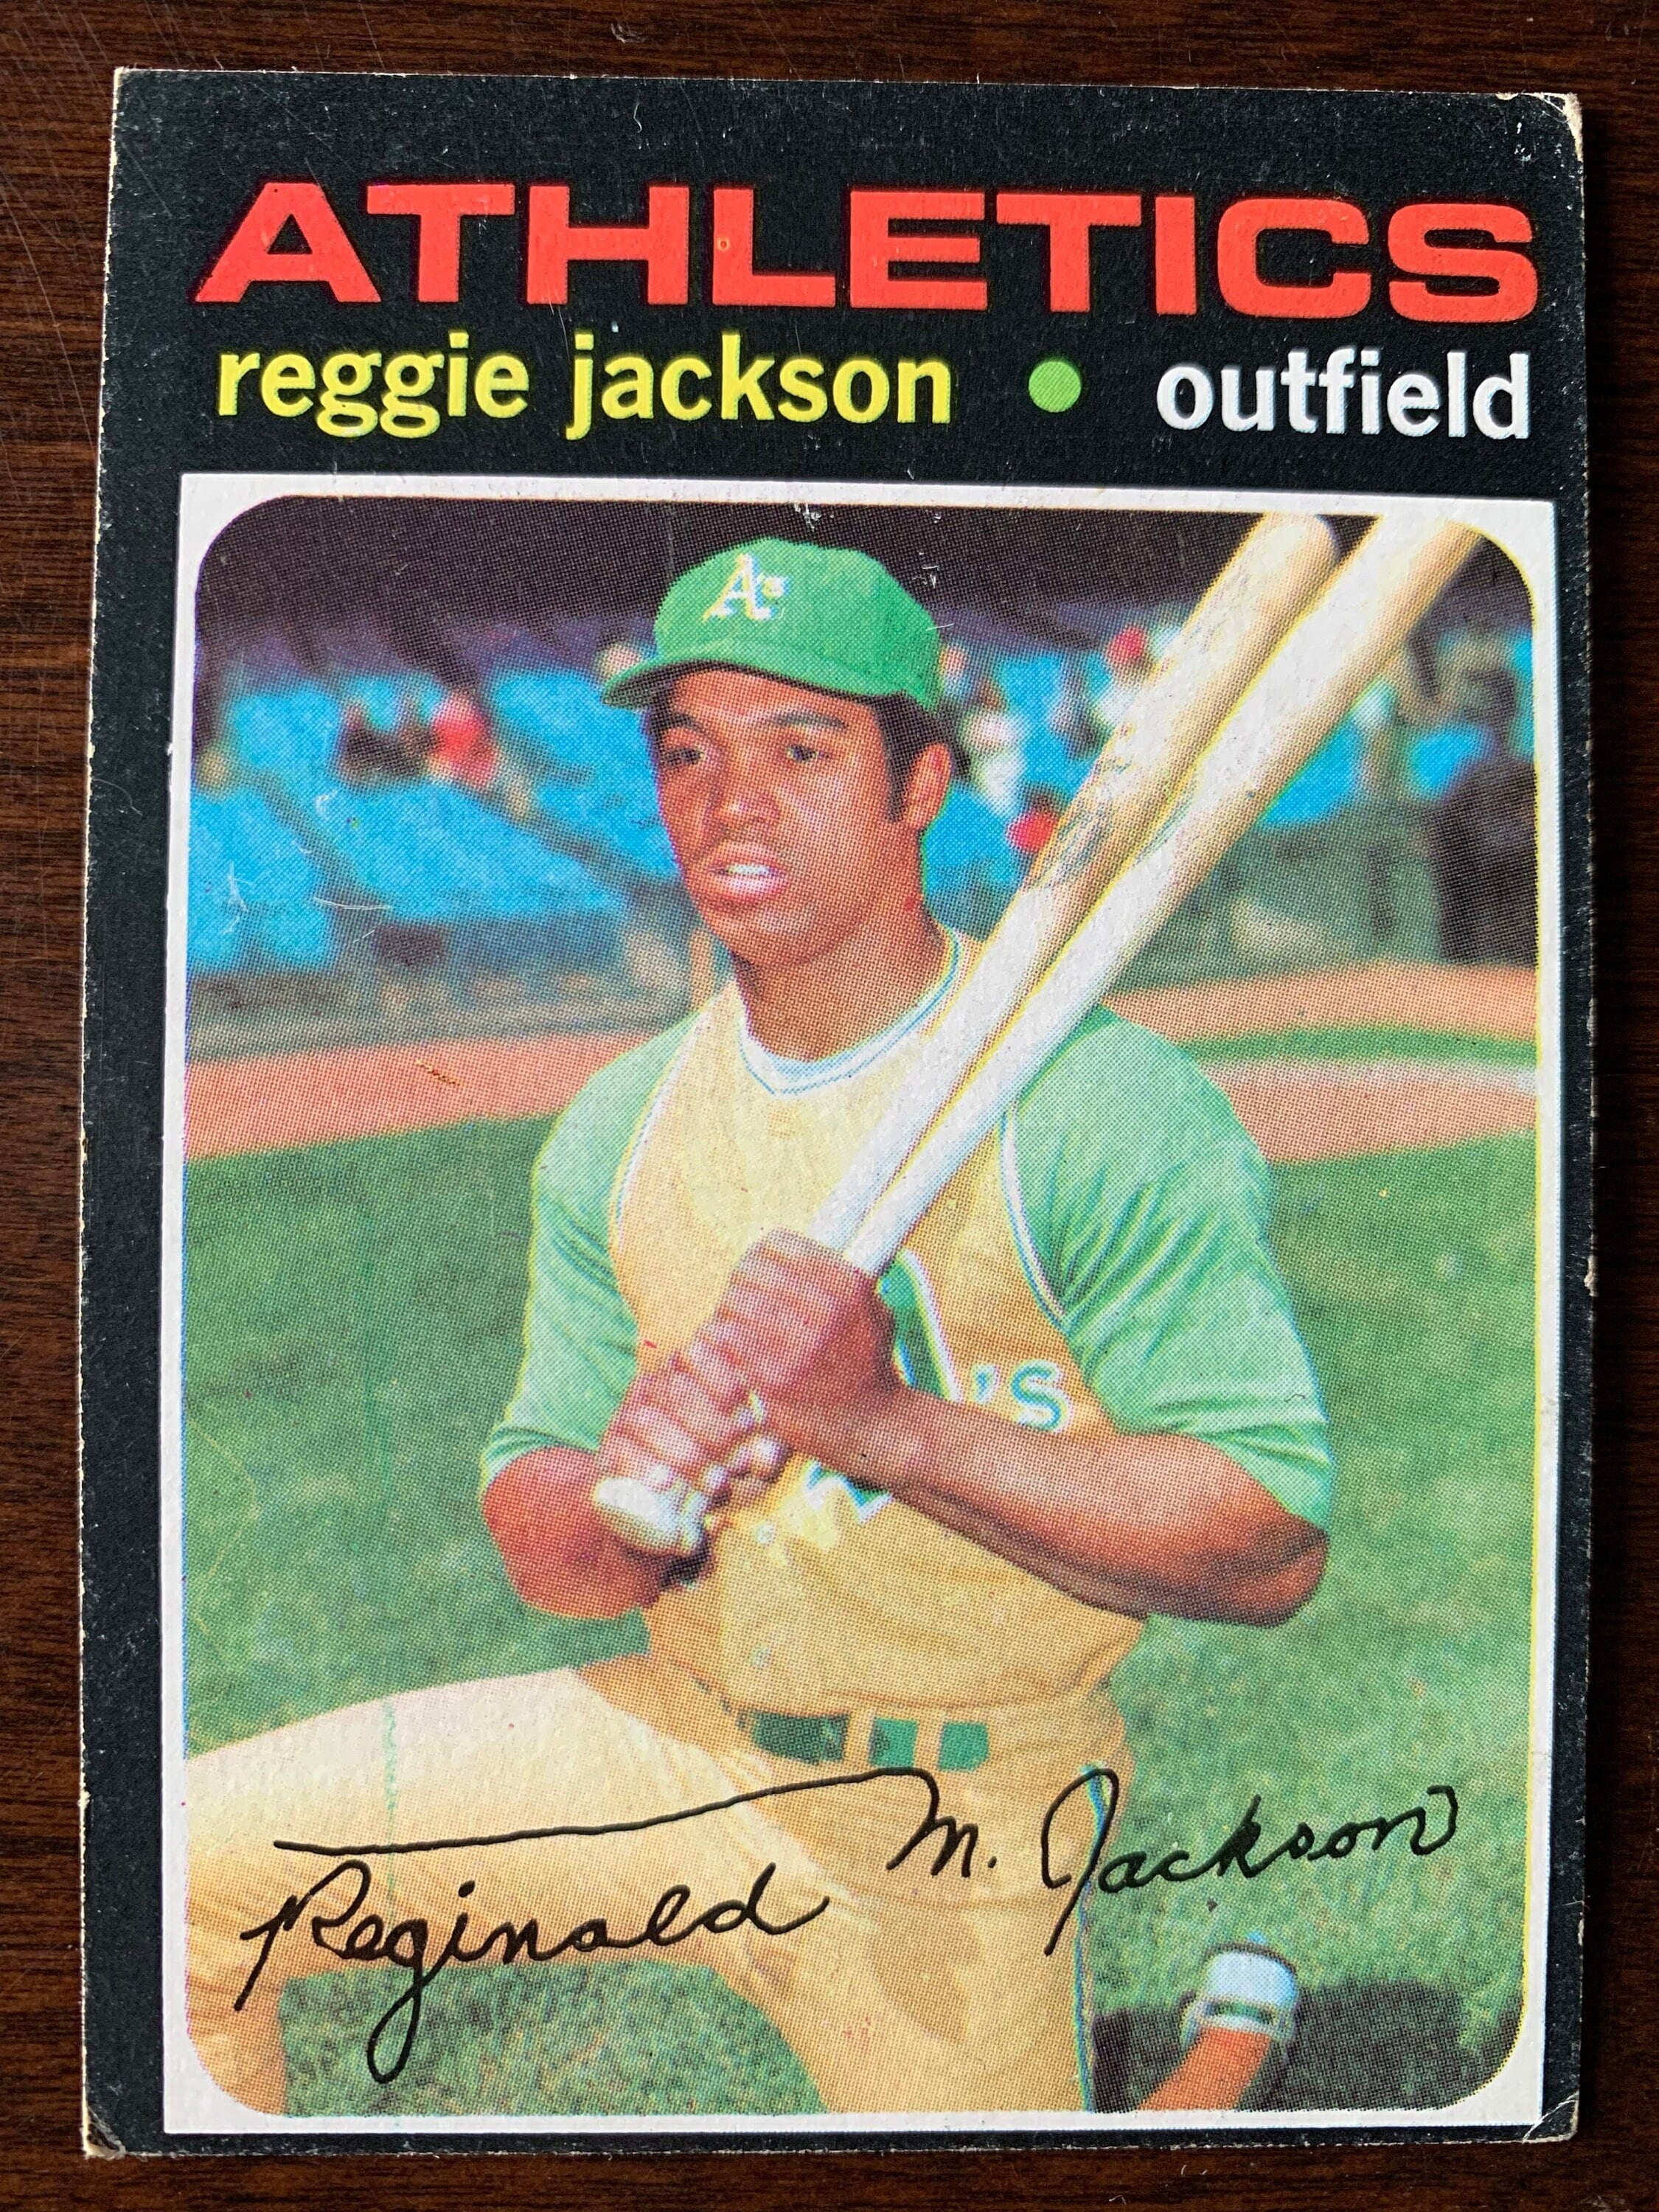 1971 Topps Baseball Card REGGIE JACKSON 20 HOF Oakland 